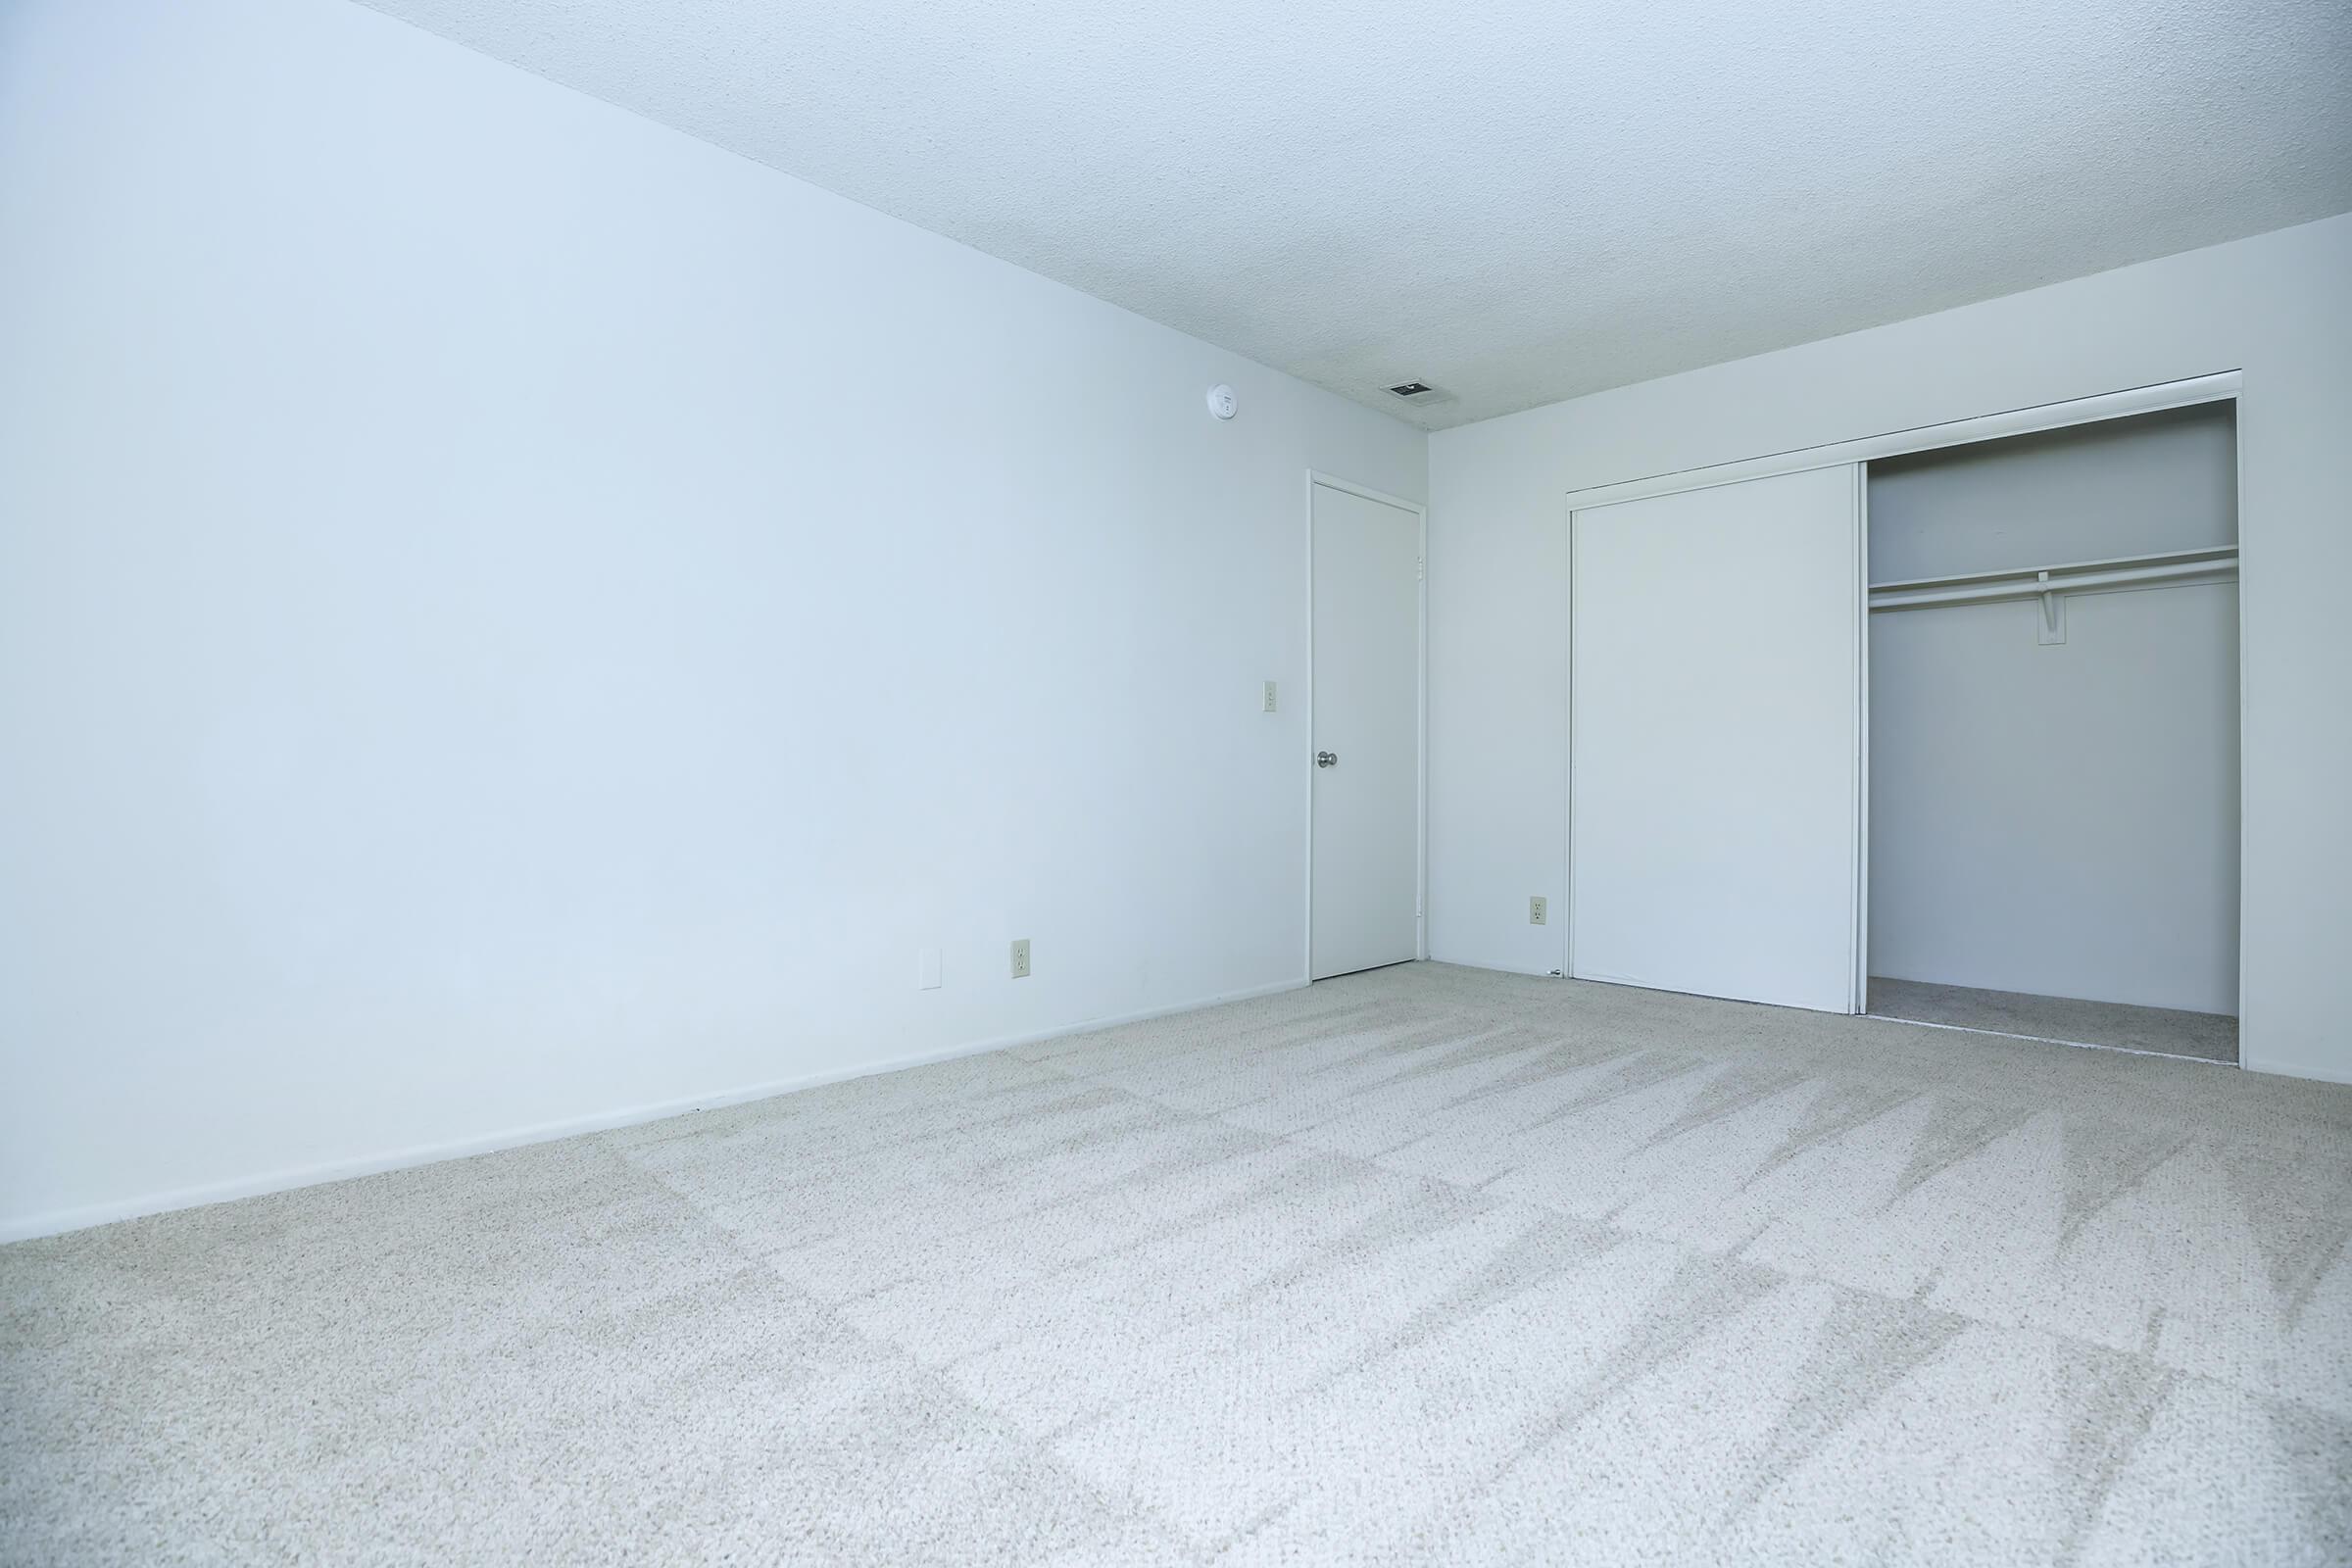 Bedroom with carpet and open sliding closet door